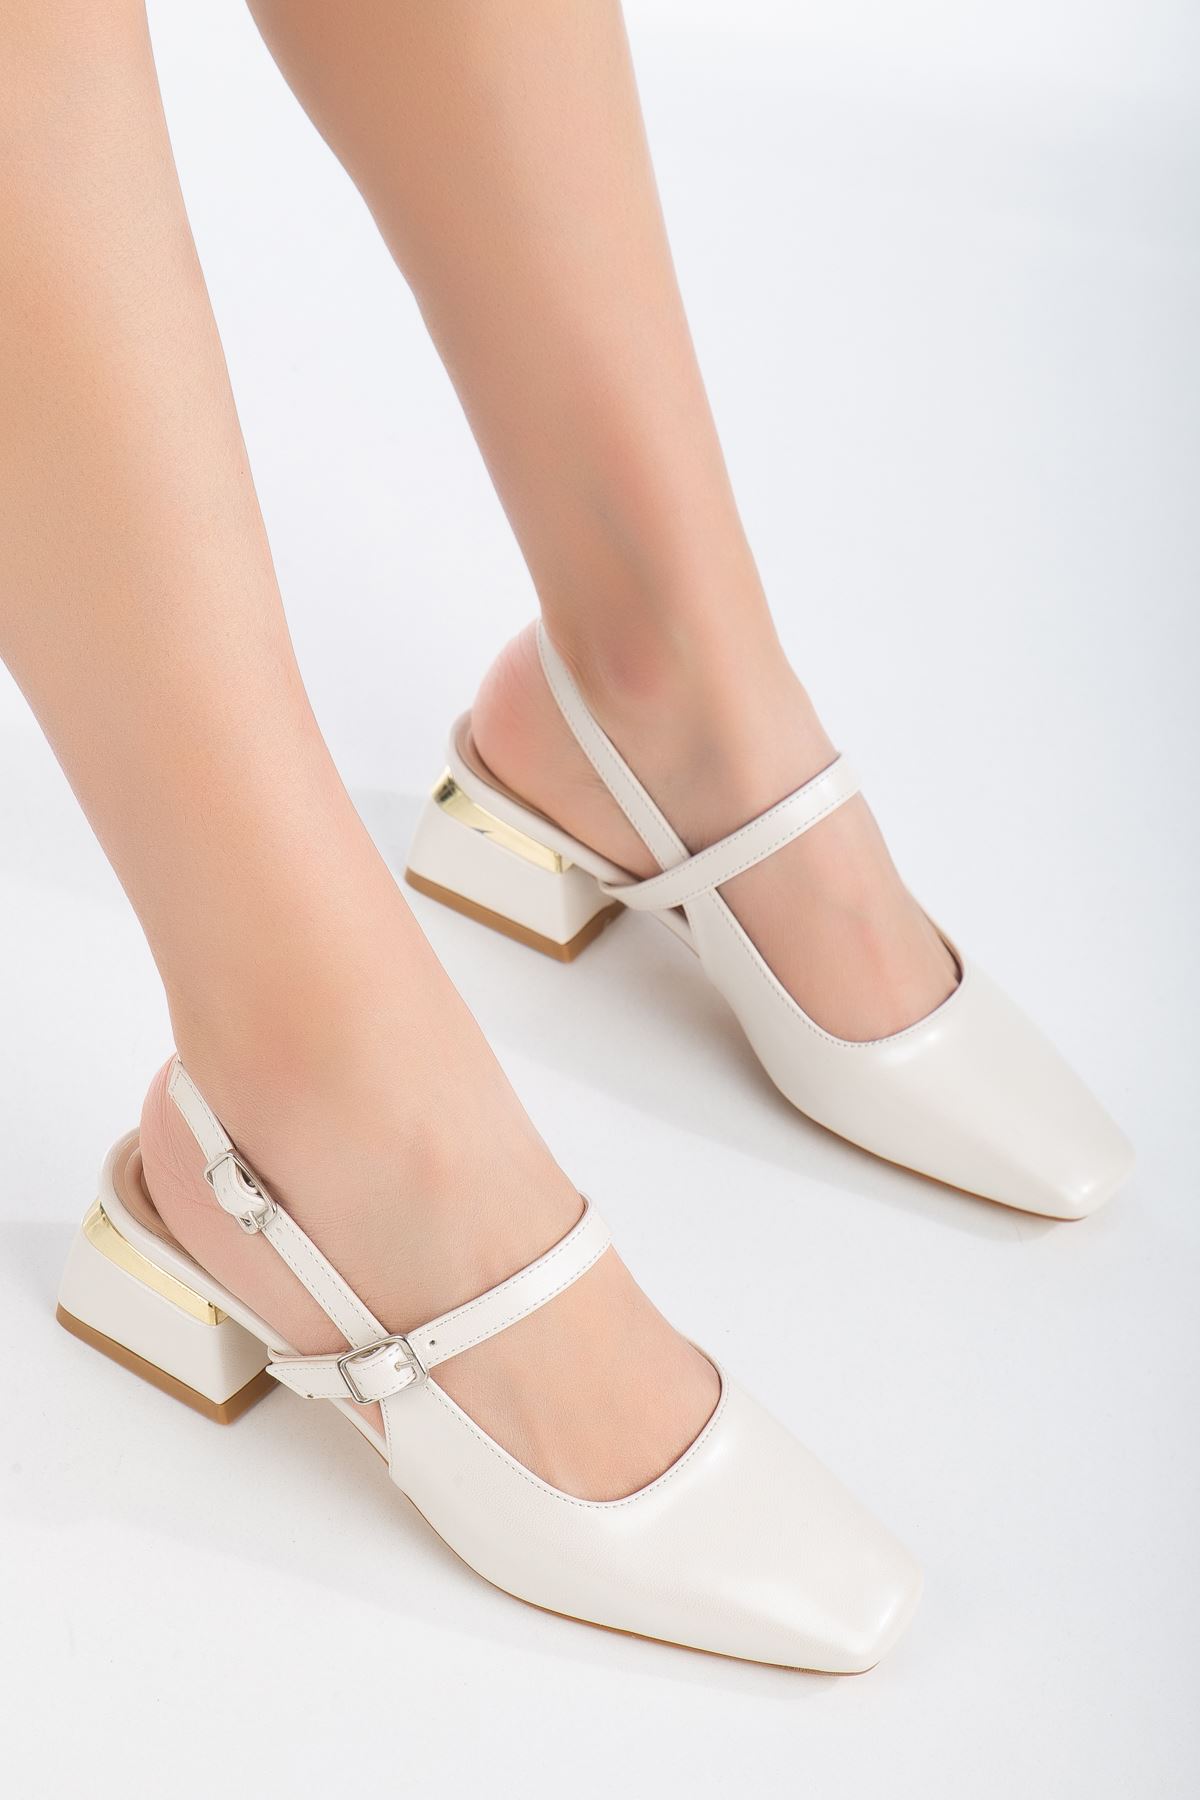 Hilda Topuklu Ayakkabı Sedef Beyaz